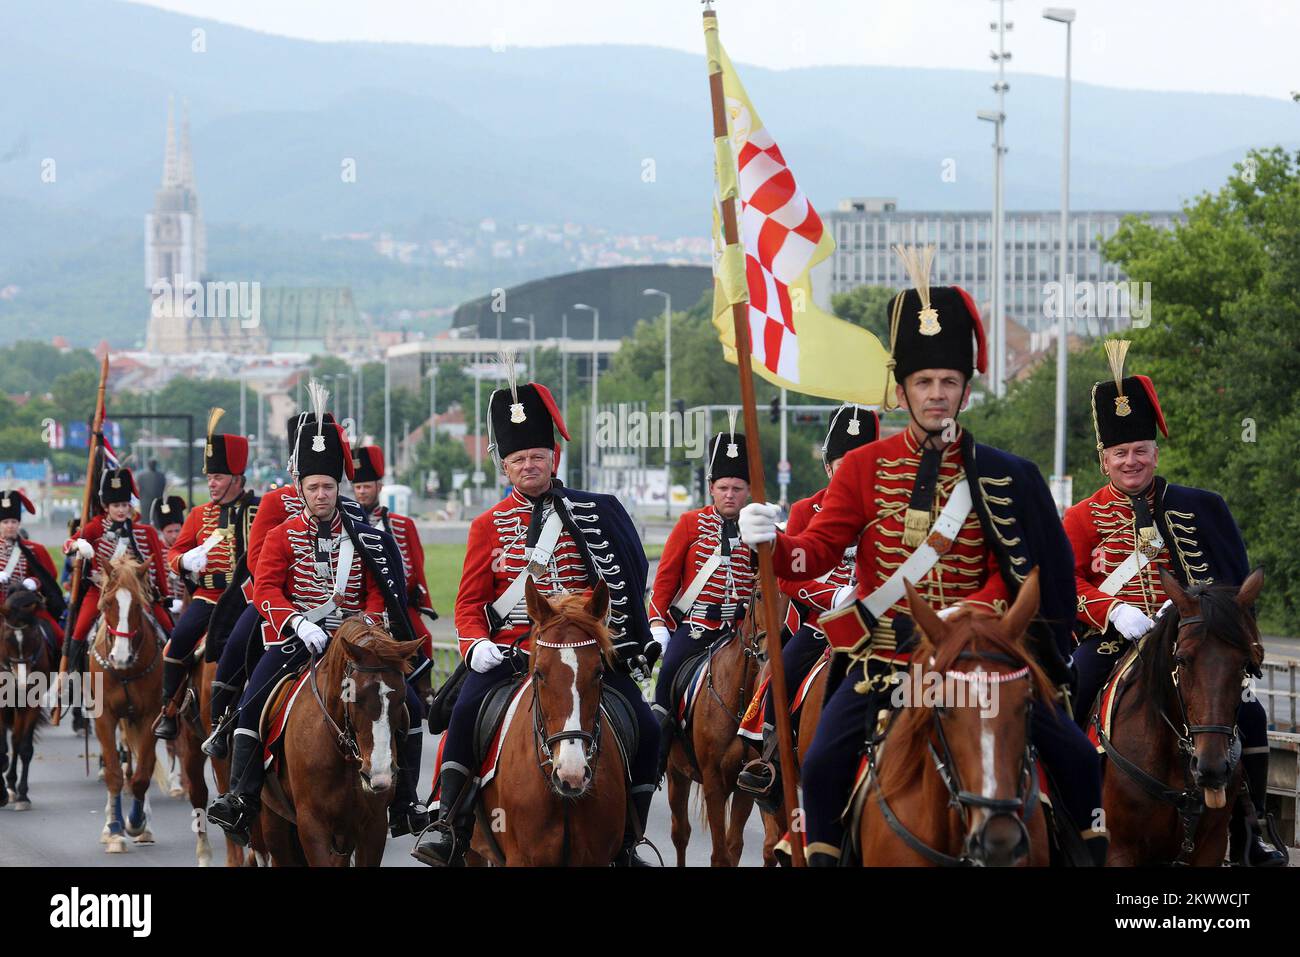 29.05.2016., Zagabria, Croazia - 1st la parata equestre per le strade di Zagabria è stata organizzata in onore di tutti i soldati di Zagabria che hanno partecipato alla guerra interna e per il compleanno di Zagabria. Foto Stock